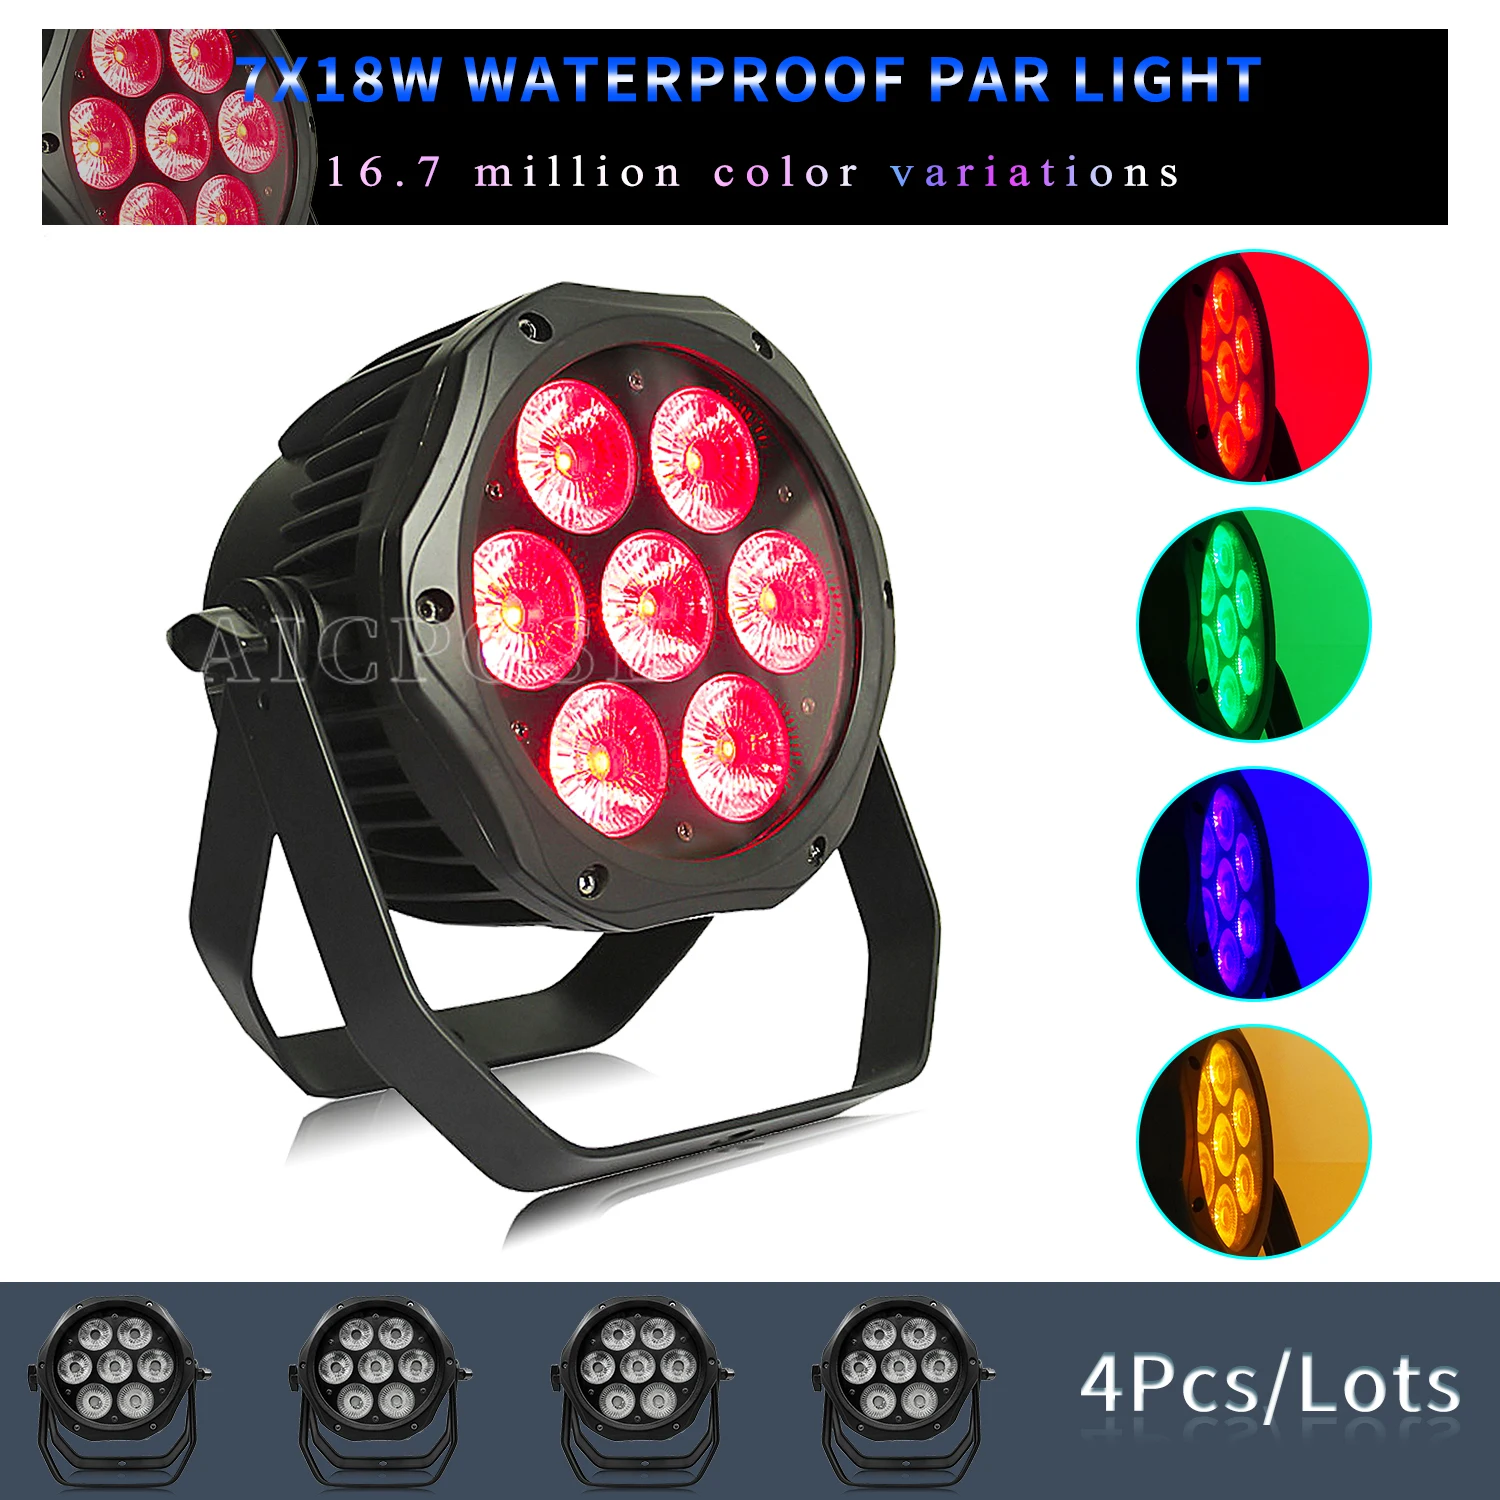 

4Pcs/Lots 7x12W RGBW/7x18W RGBWA UV 6 in 1 LED Par Light Outdoor Waterproof Stage Light DMX Control DJ Disco Bar Lighting